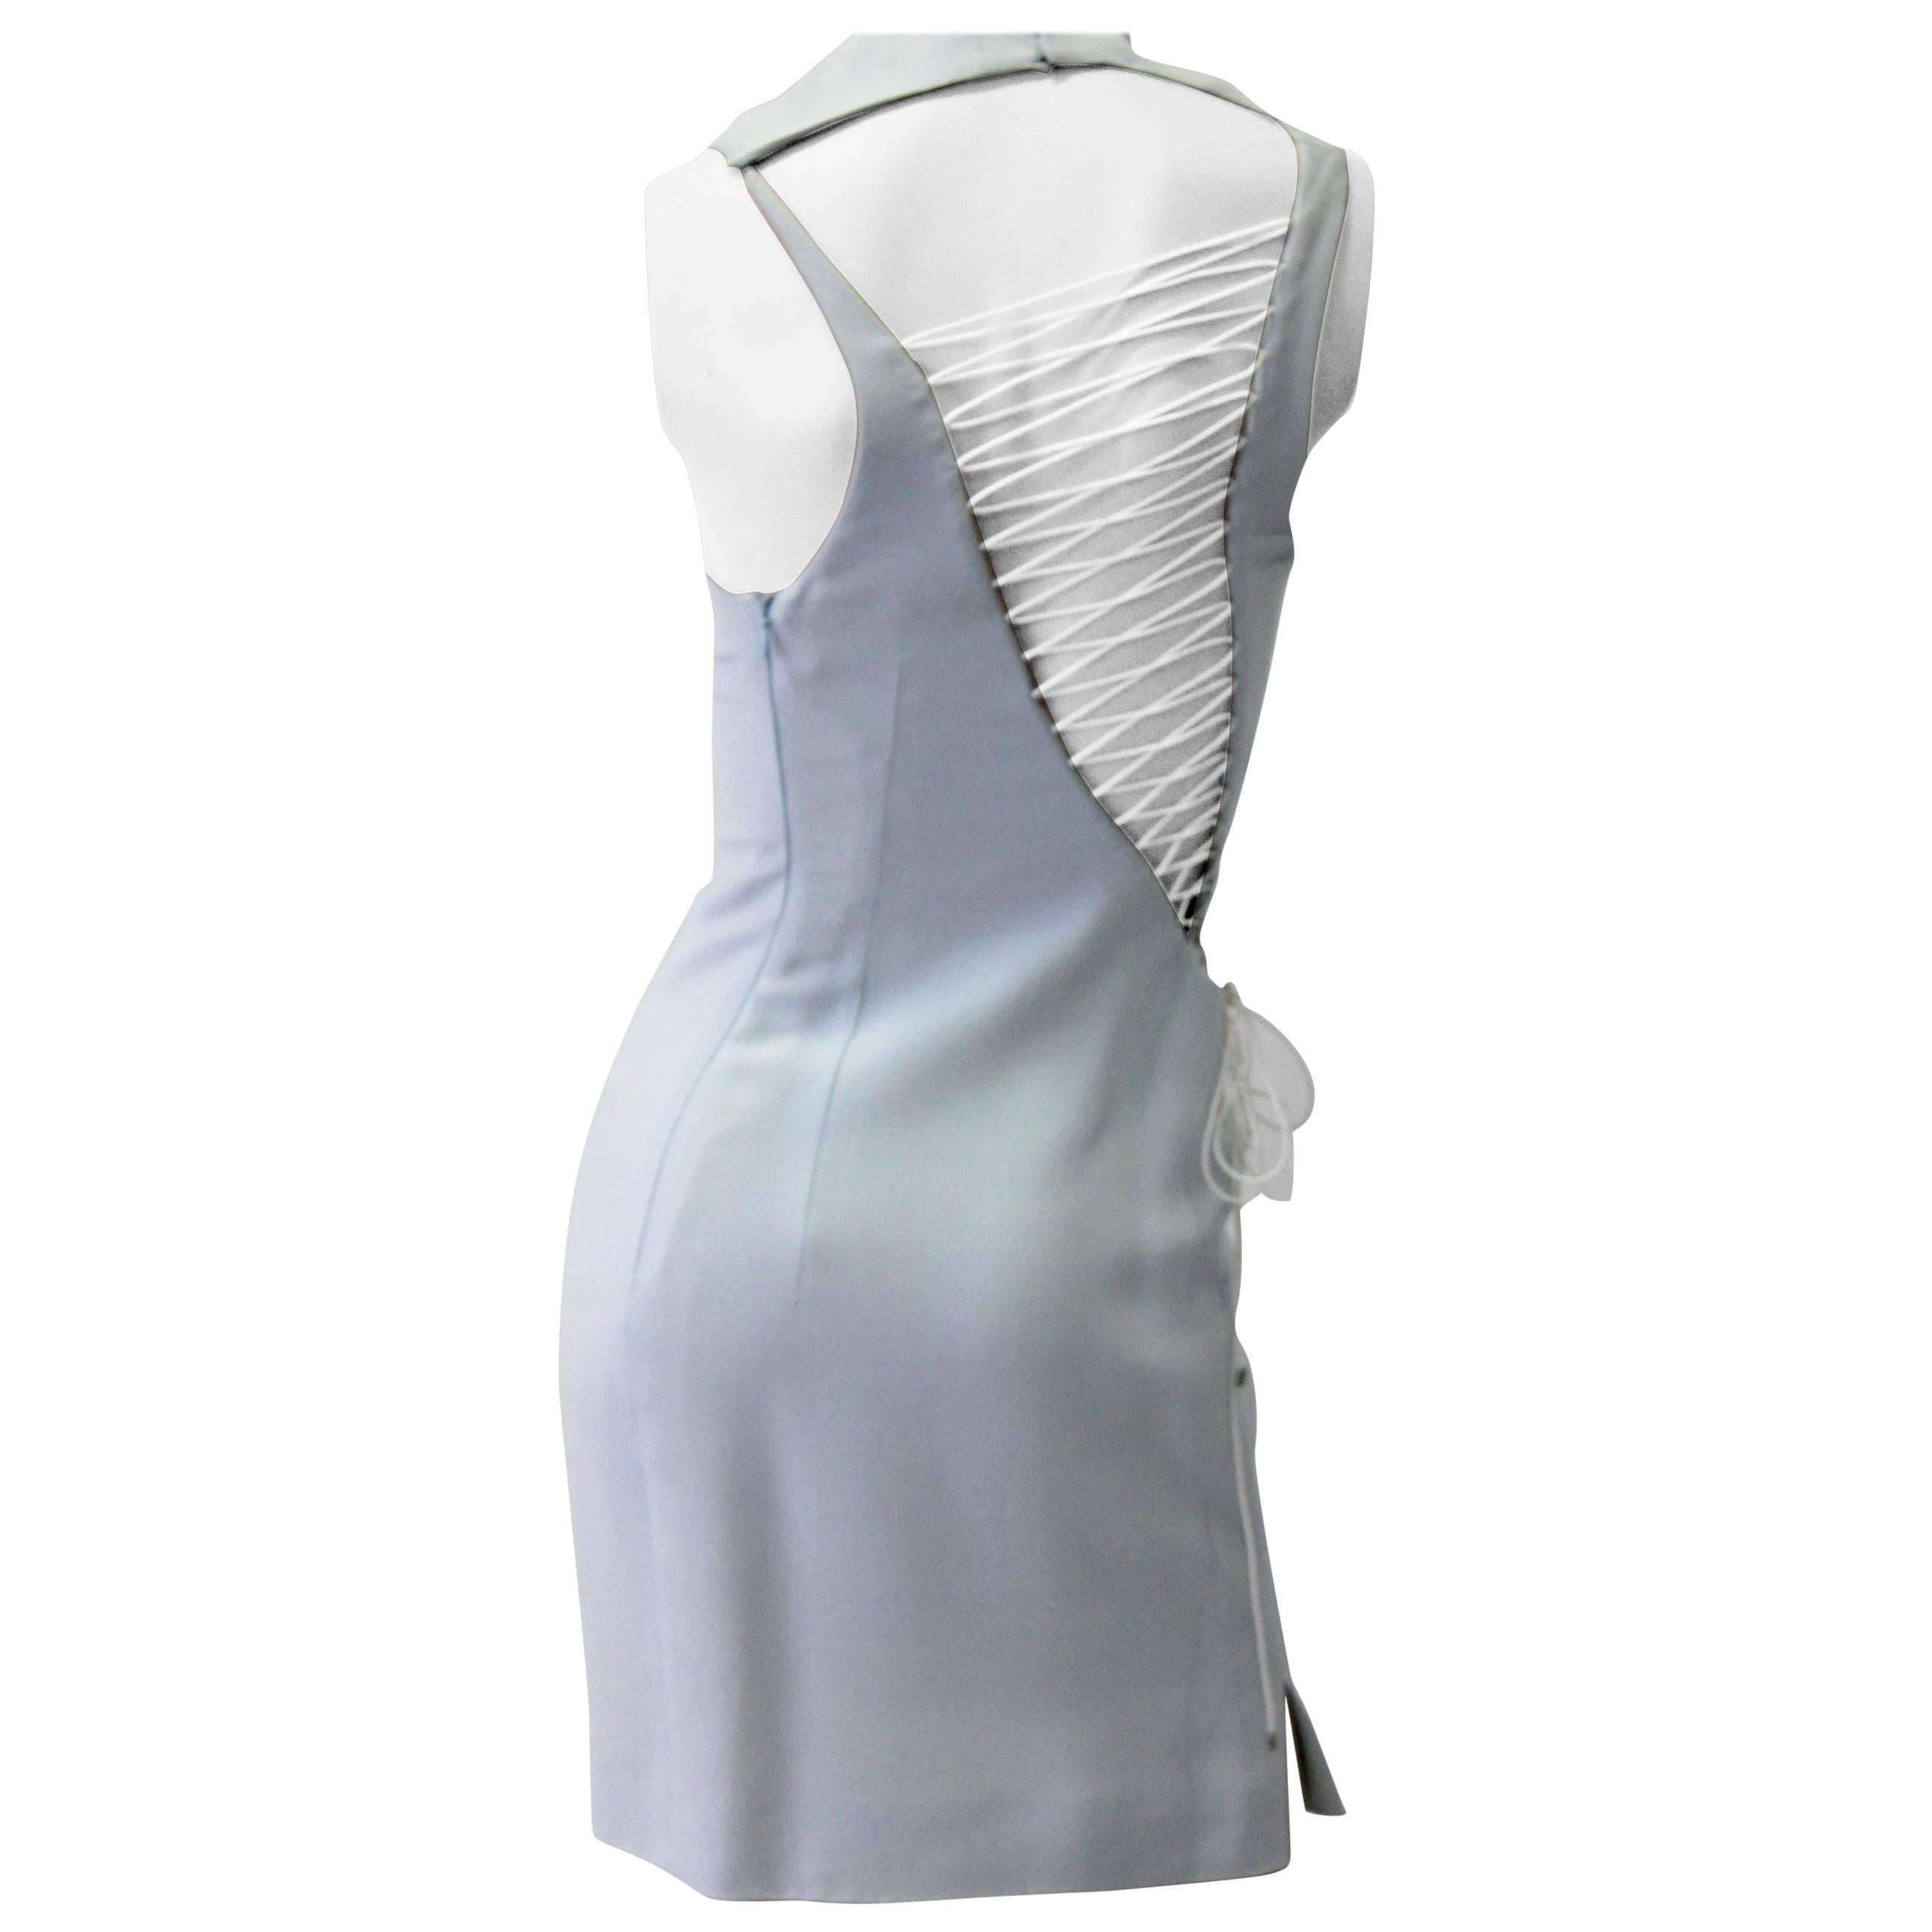 Unique Angelo Mozzillo Bodycon Mini Dress Criss Cross Ribbon Laced Back  For Sale